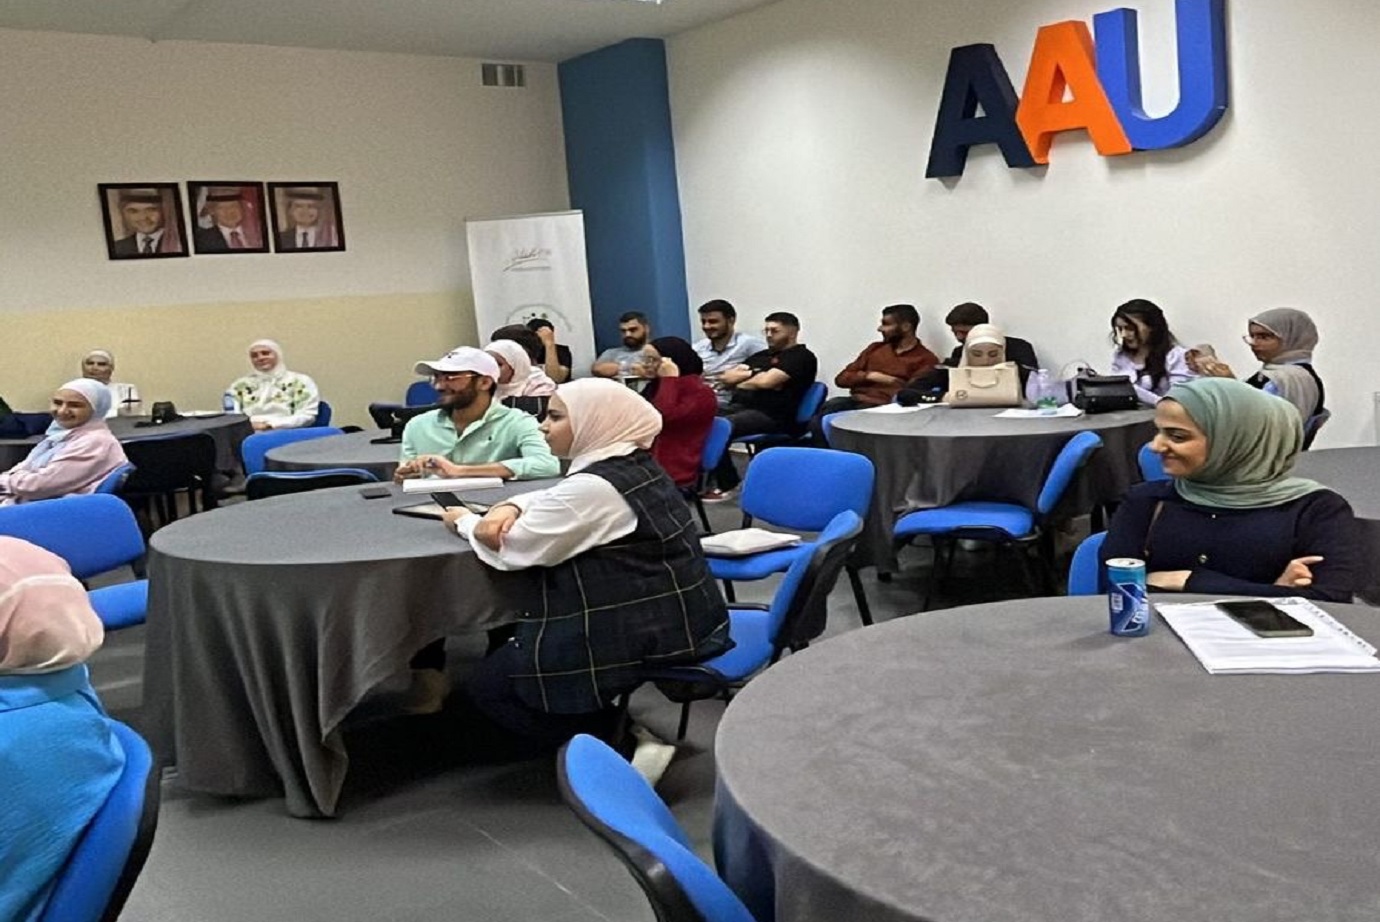 دورة تدريبية مجانية لتعليم اللغة الإسبانية في "عمان العربية"2